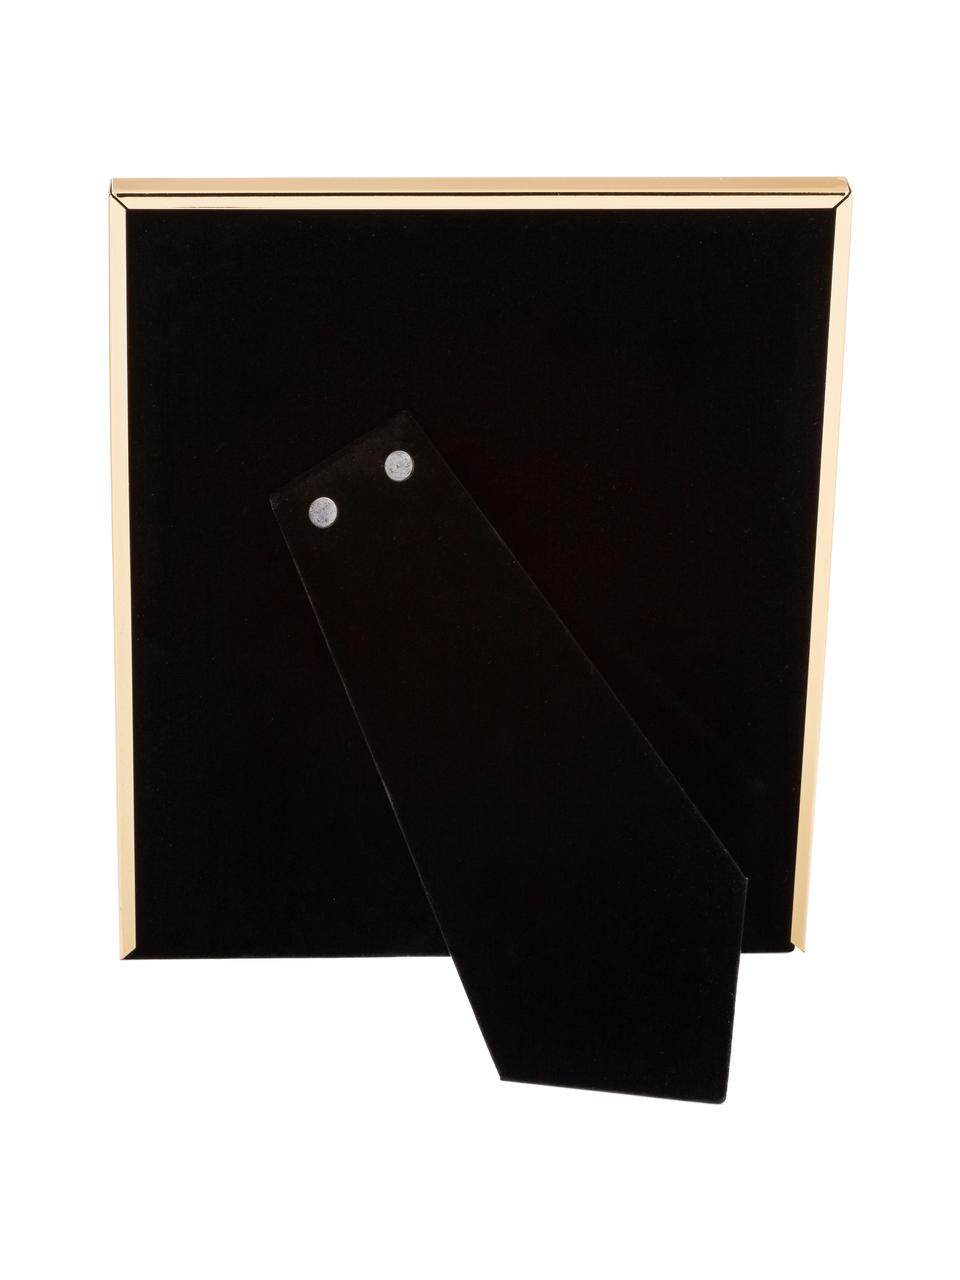 Bilderrahmen Memento mit Passepartout, Rahmen: Metall, hochglanz lackier, Front: Glas, spiegelnd, Goldfarben, 13 x 18 cm